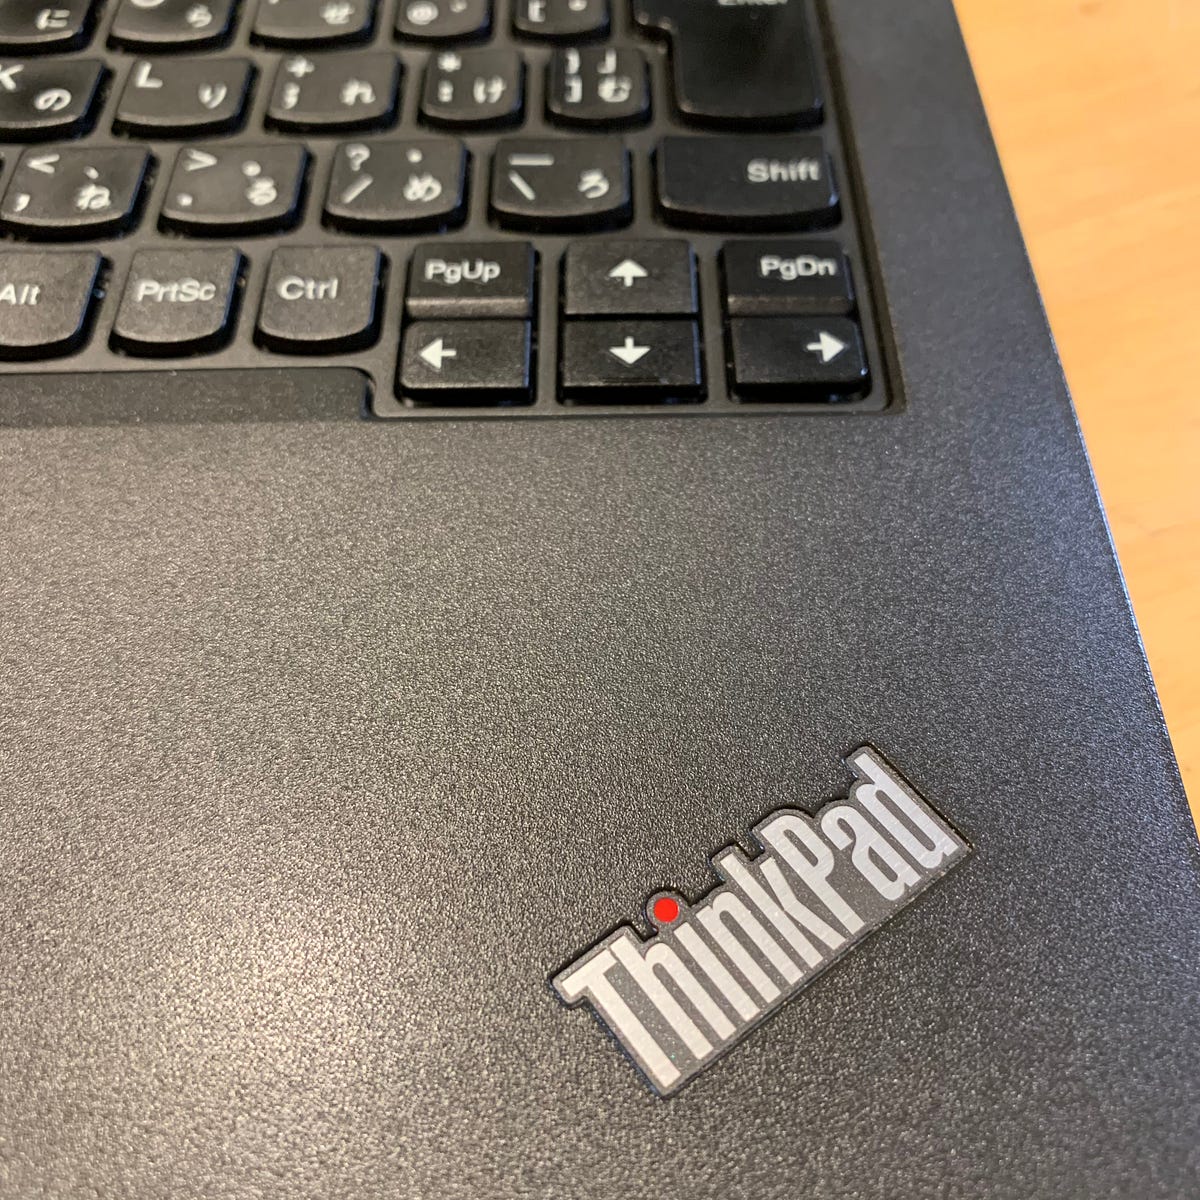 ThinkPad X260 を買った。. もうかれこれ10年以上 Mac を使ってきて